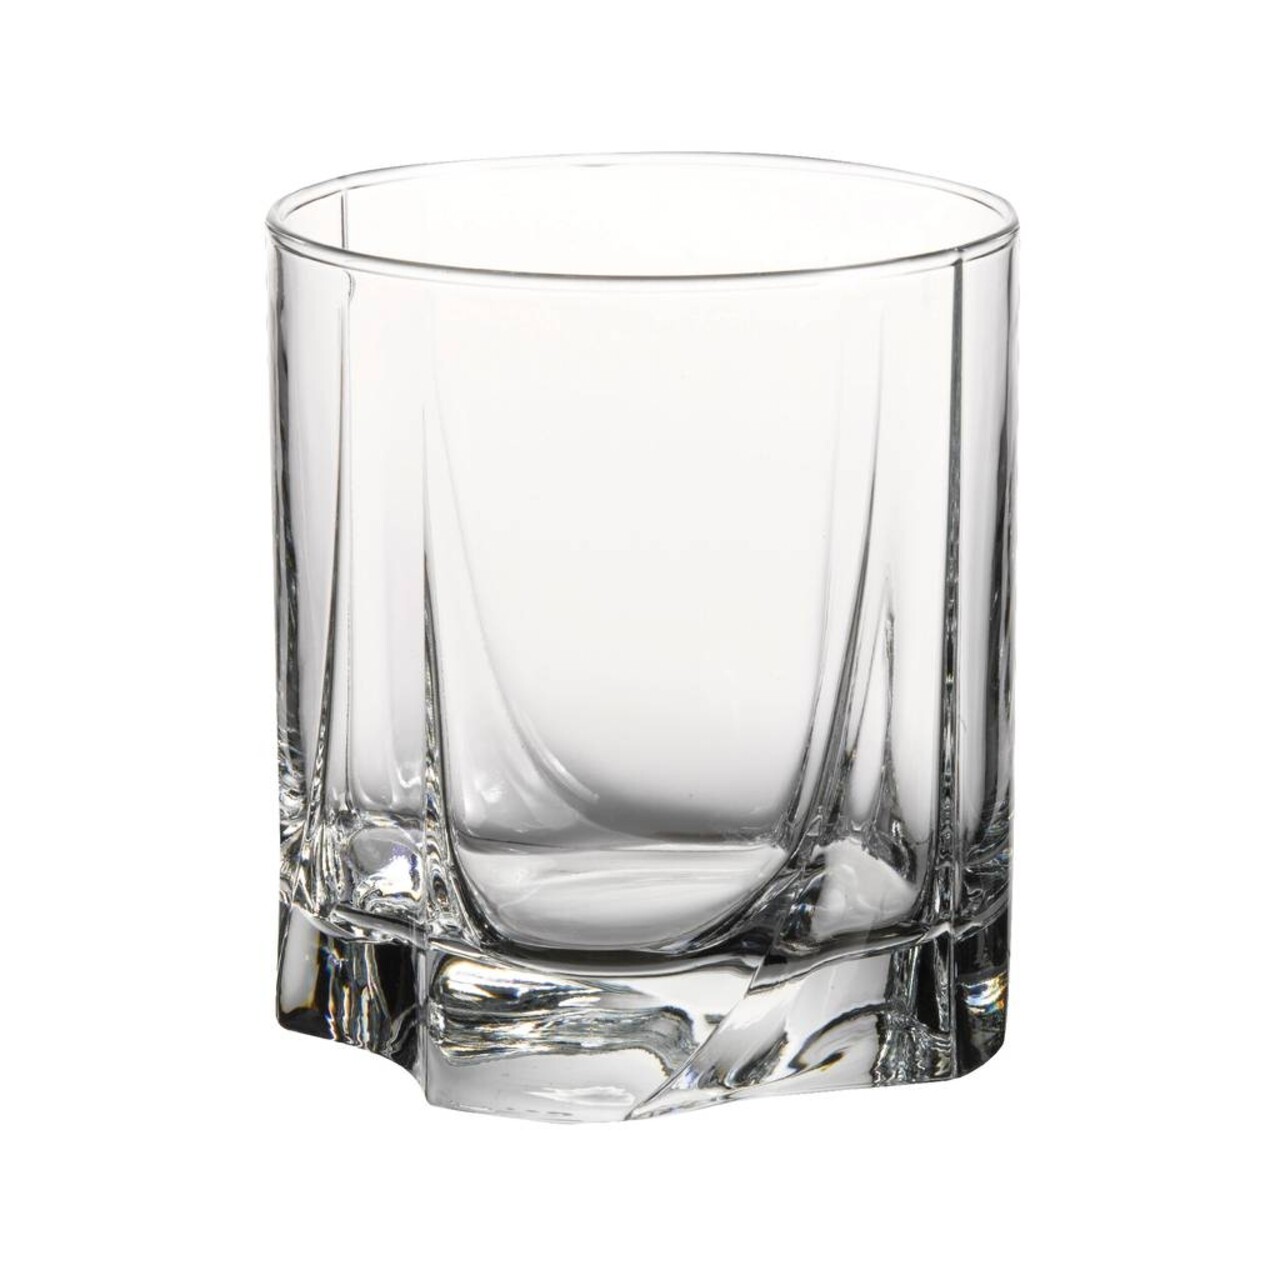 6 db-os Luna pohár készlet, Pasabahce, 253 ml, üveg